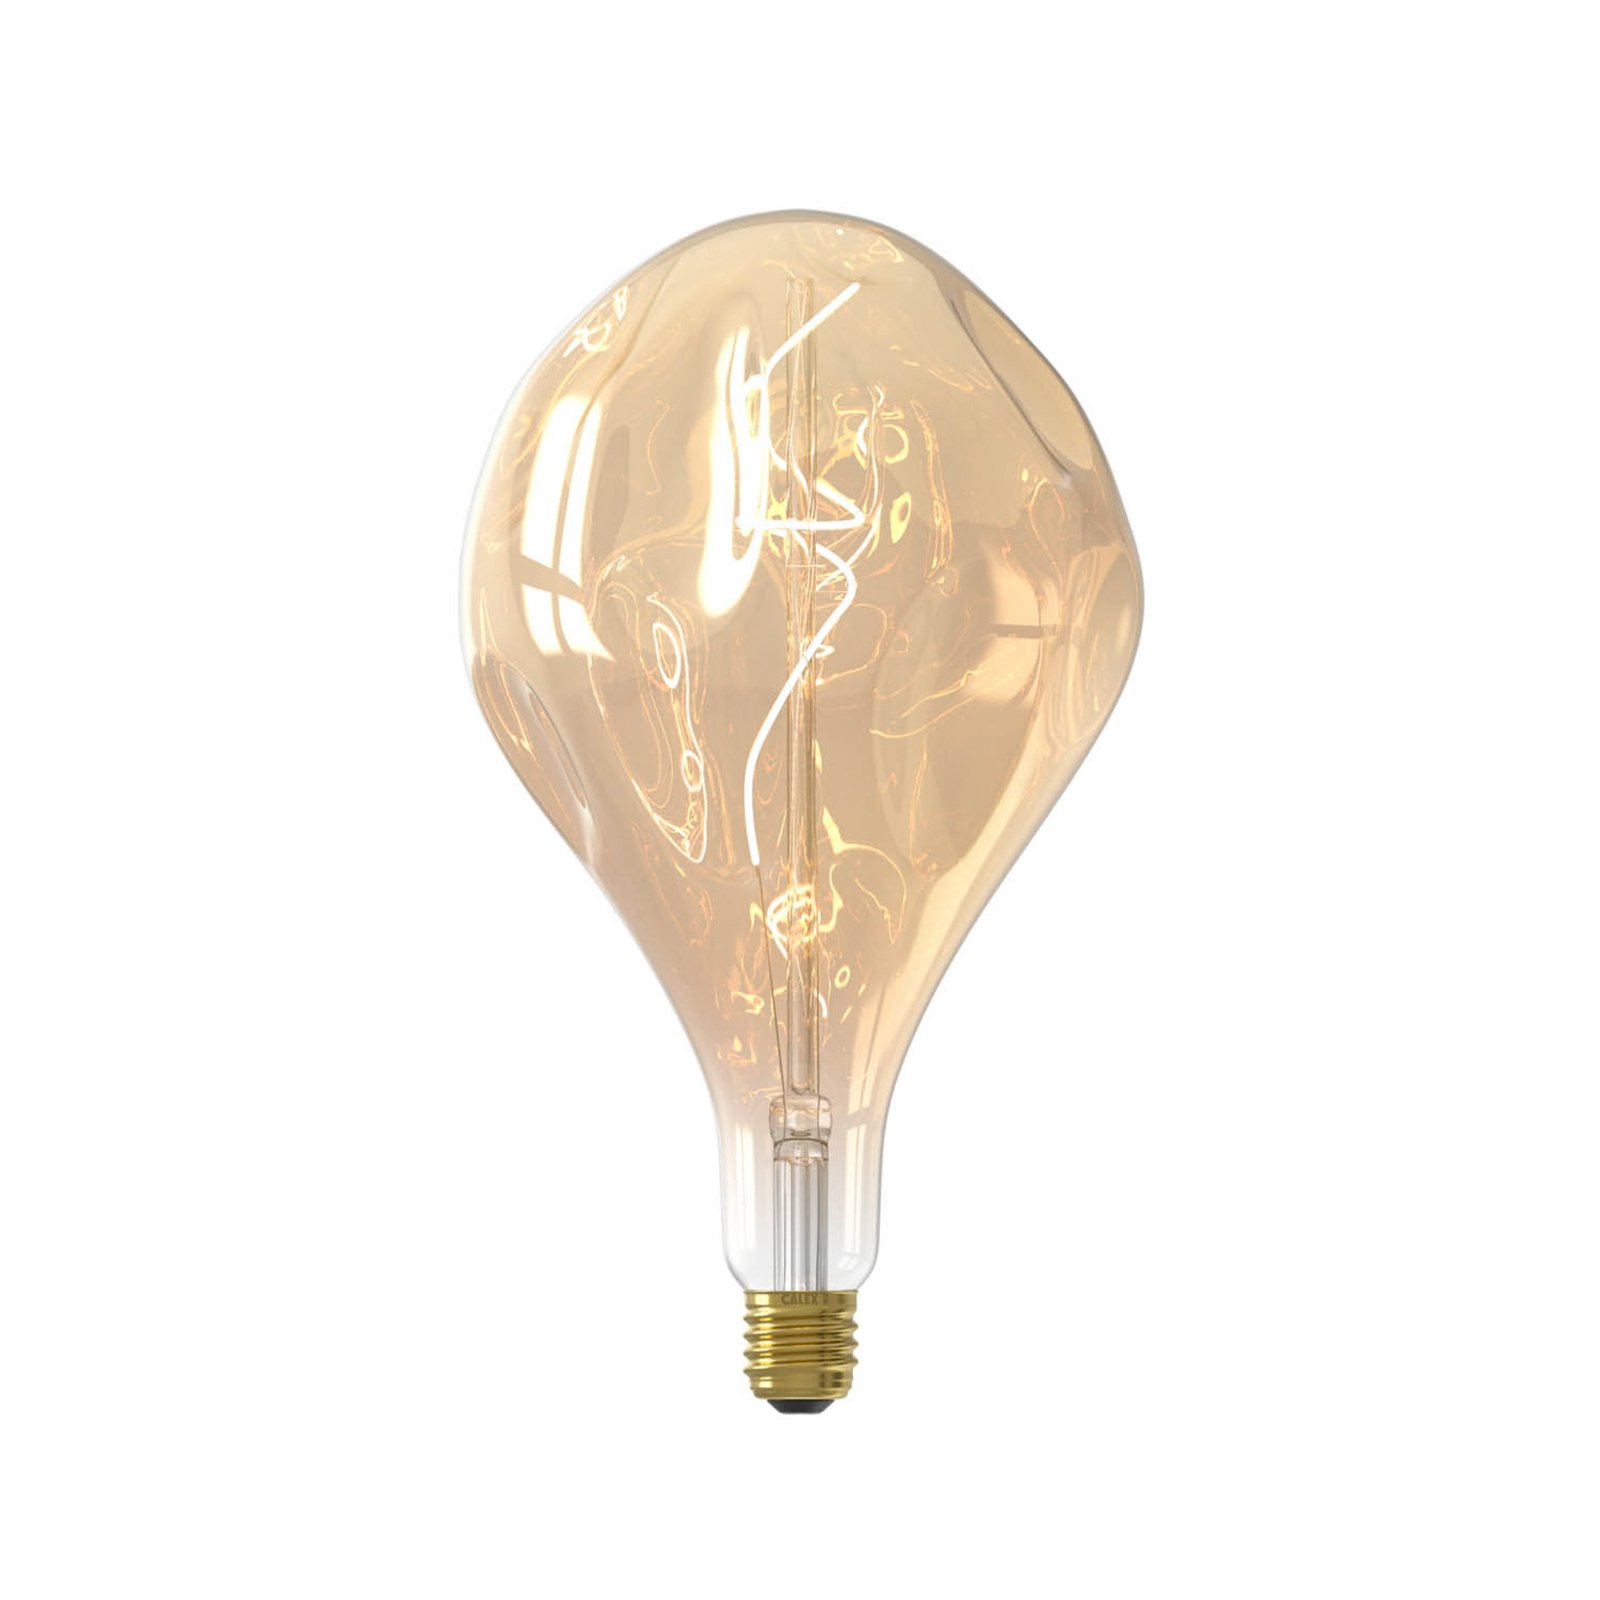 Calex Organic Evo bombilla LED E27 6W dim oro